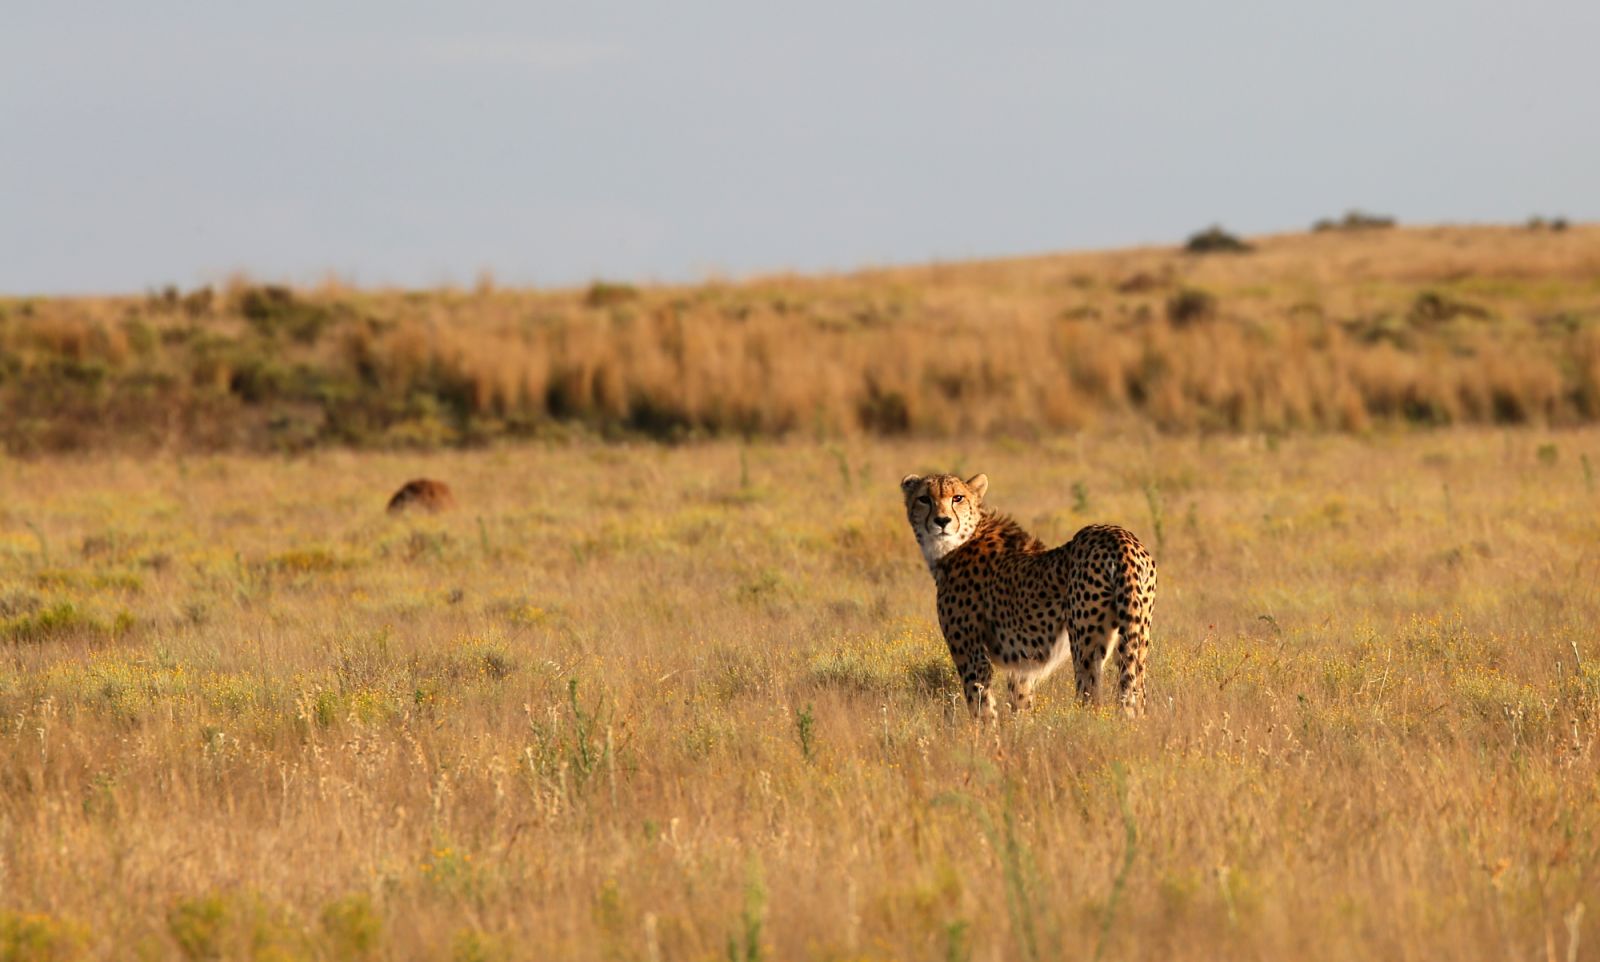 A cheetah in golden hour